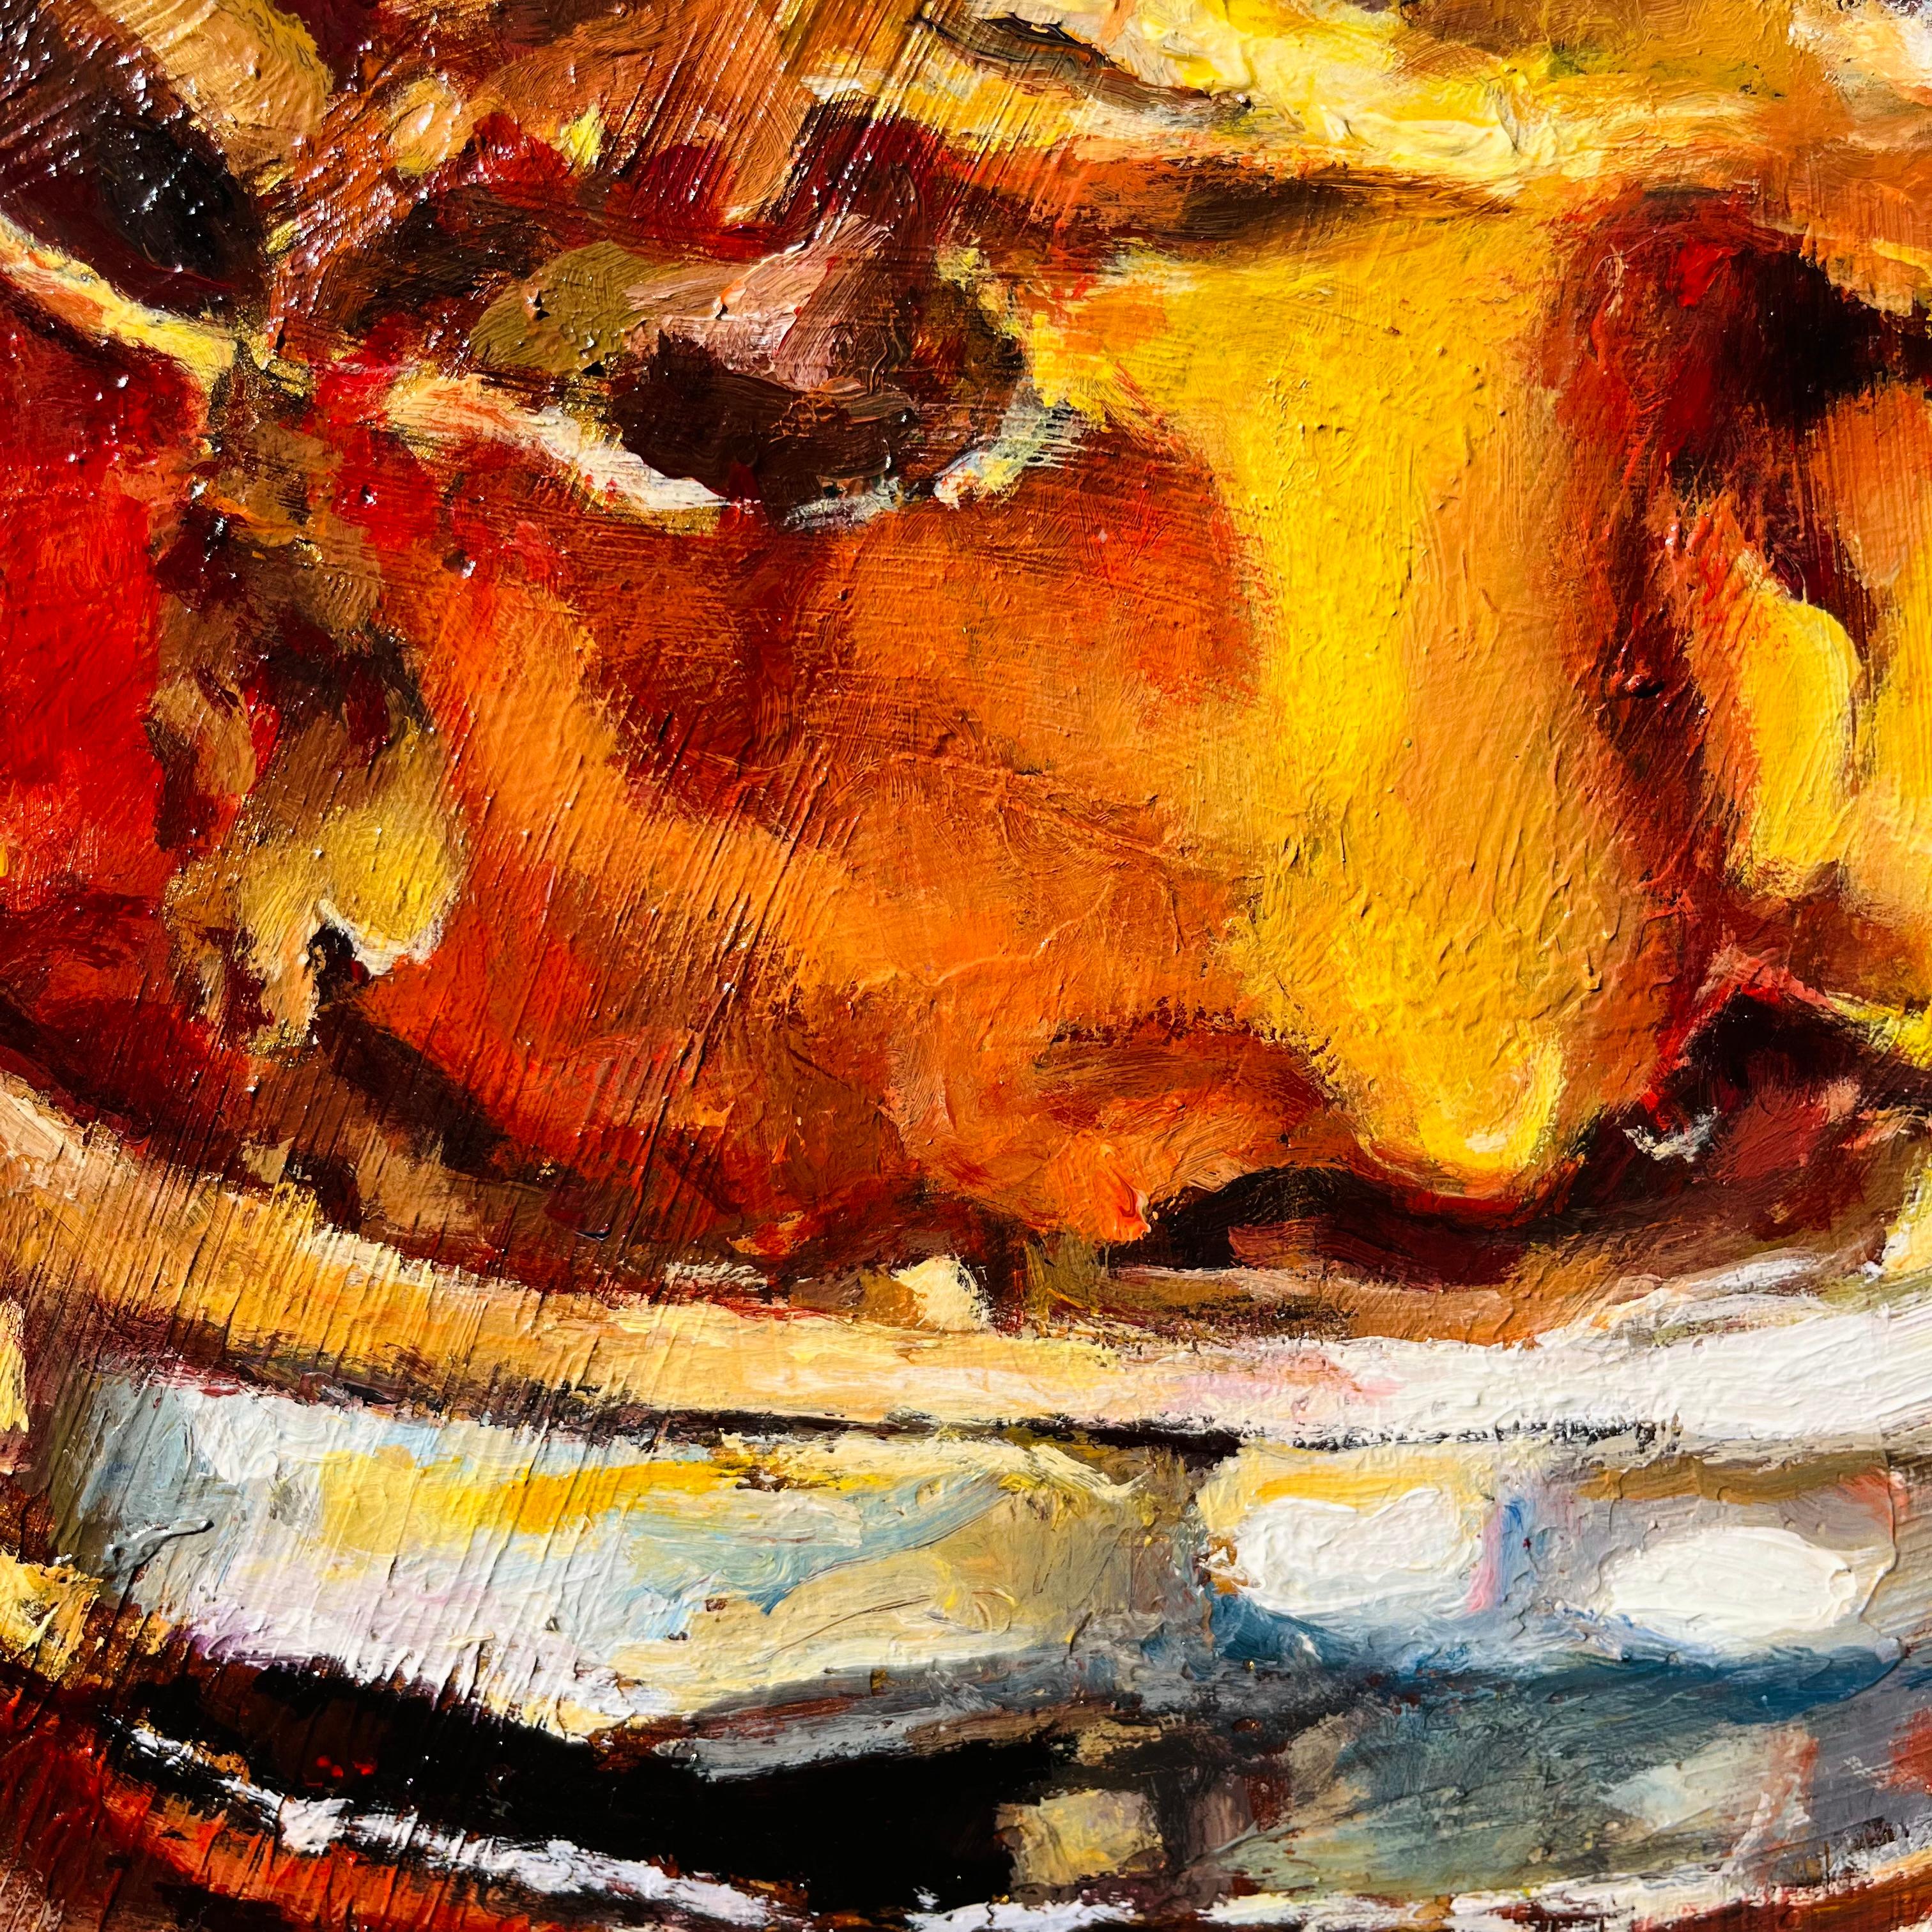 <p>Kommentare des Künstlers<br>Ein einsames Glas Bourbon steht vor dem Hintergrund gedämpfter Farbtöne. In sanftes Umgebungslicht getaucht, erwecken seine bernsteinfarbenen Tiefen ein Gefühl von Wärme und Ruhe. Das Glas strahlt einen stillen